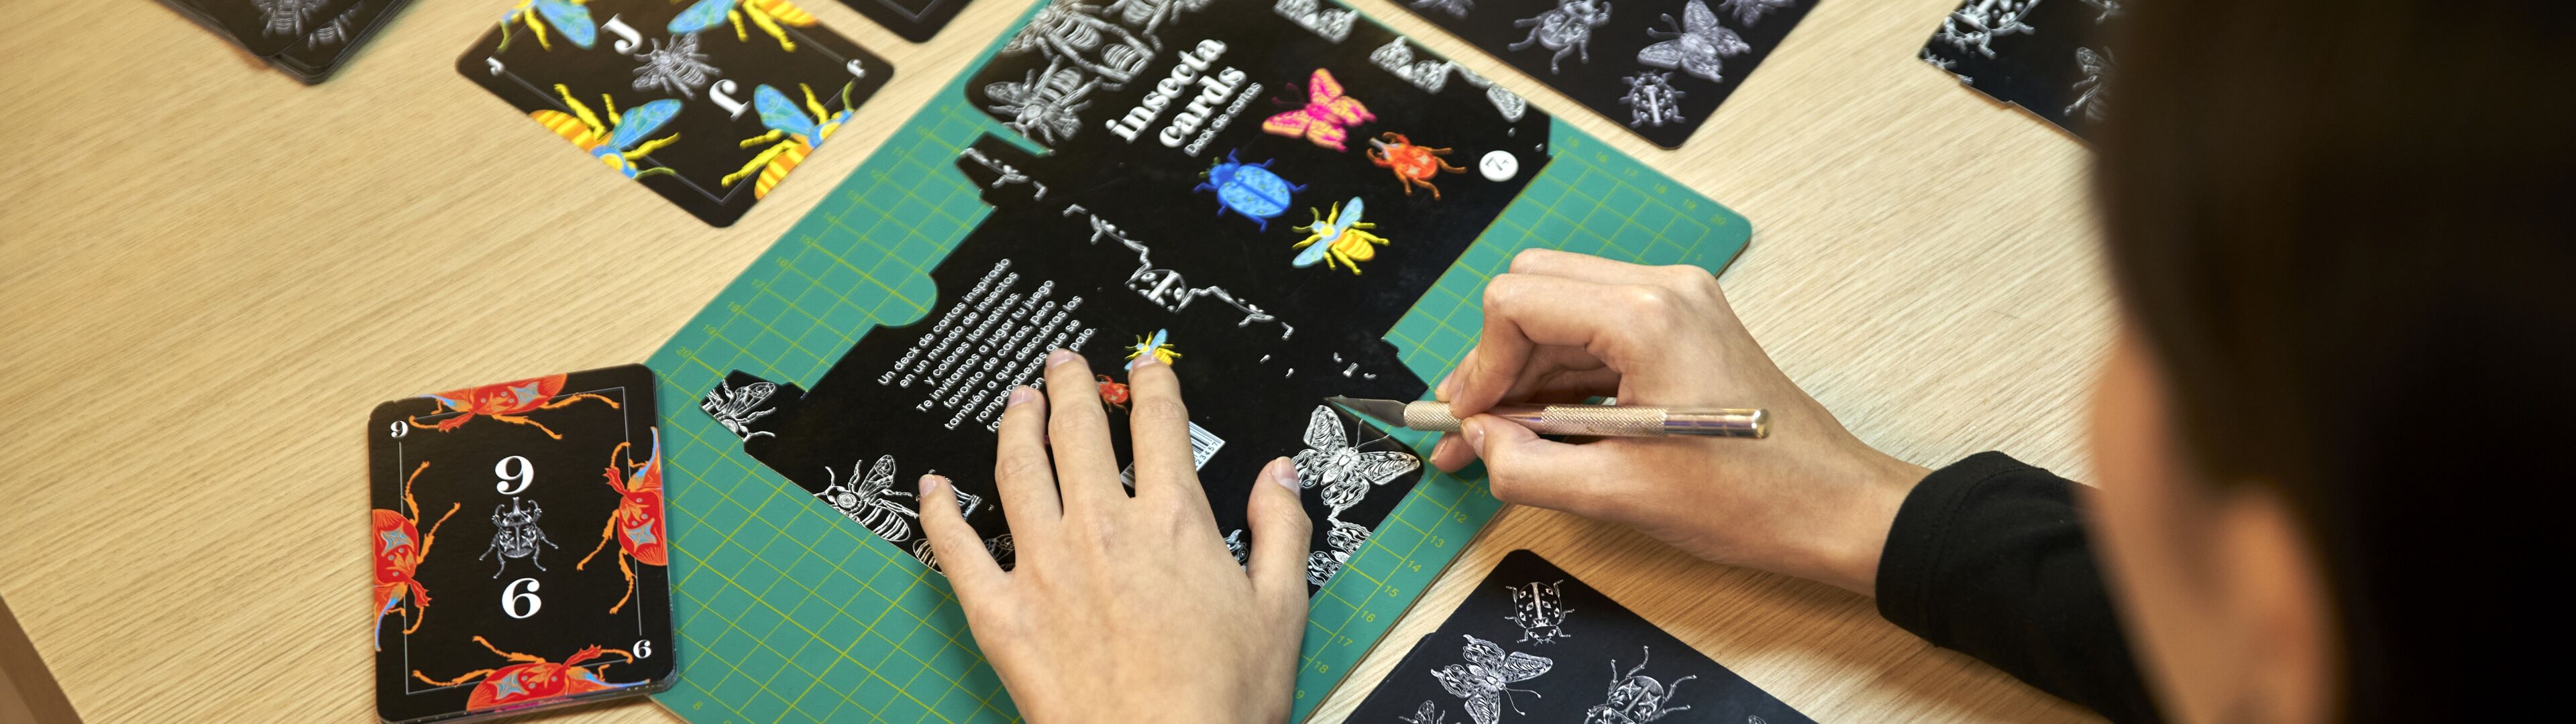 Una persona se dedica a elaborar intrincados diseños de cartas, enfocándose en una con motivos de mariposas coloridas.